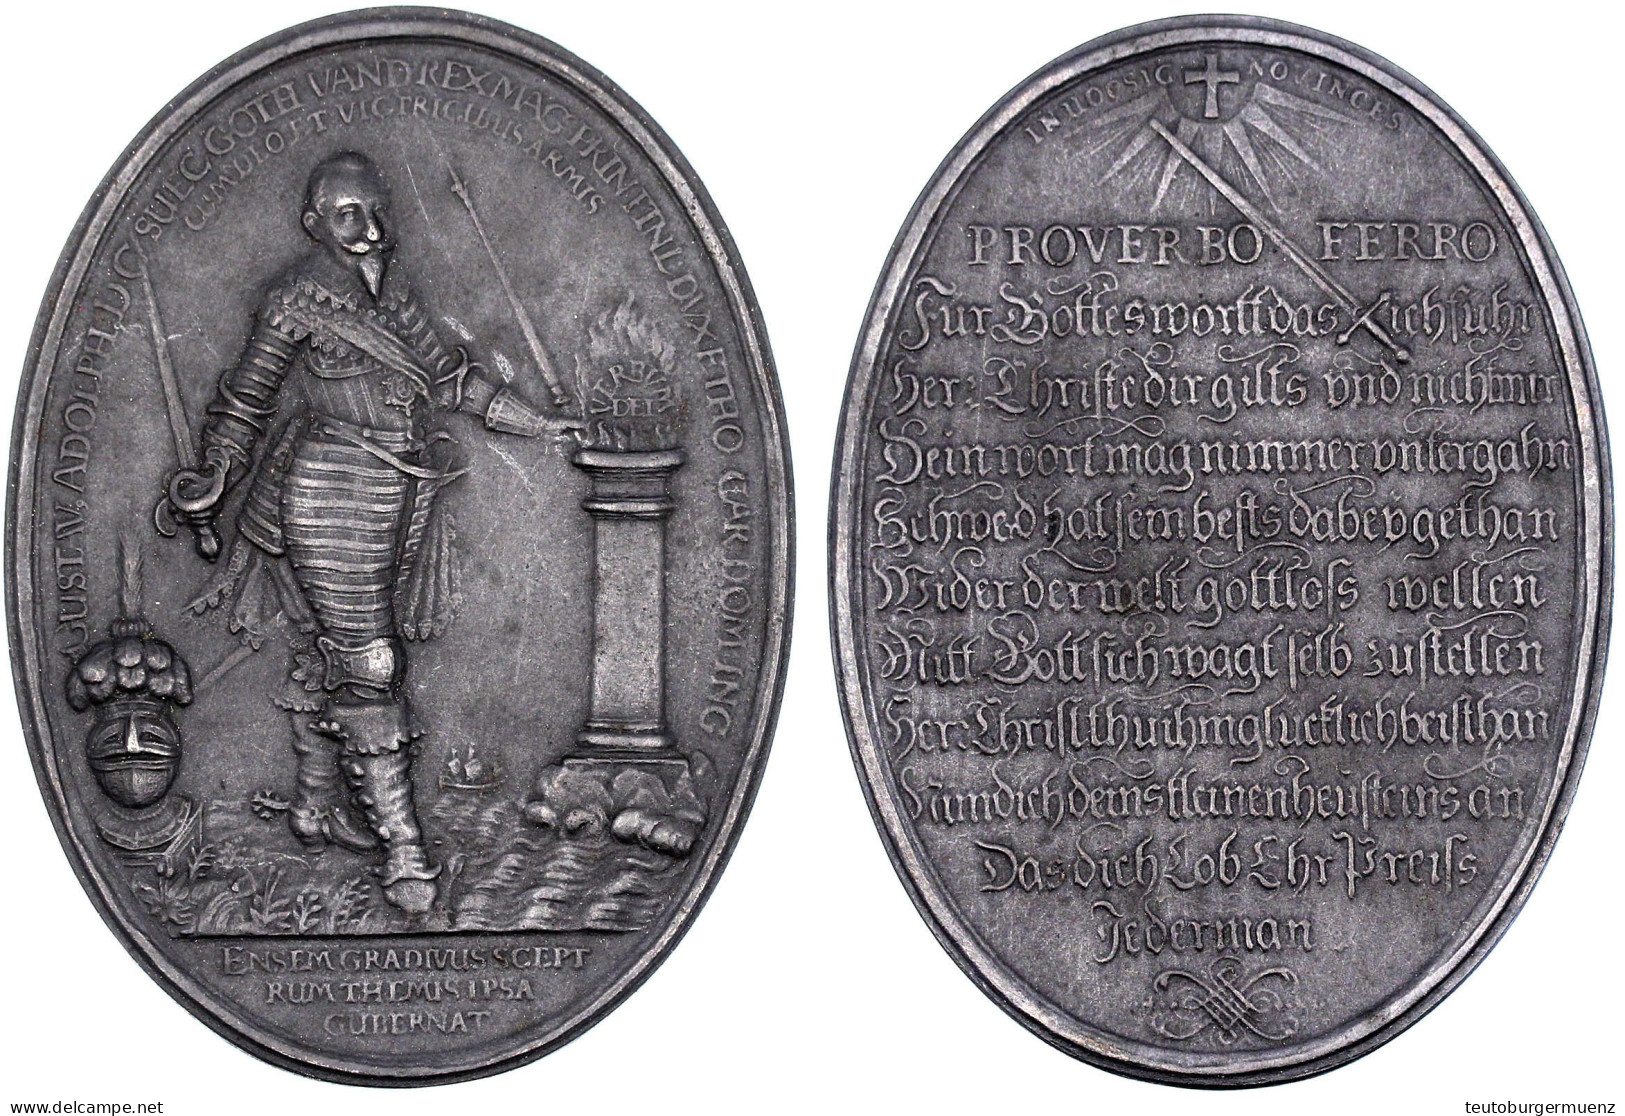 Ovale Eisenguss-Medaille O.J. (1932), Unsign. Nach Einer Medaille Von Paul Walther, Im Auftrag Der Stadt Fürth Zur Erinn - Goldmünzen